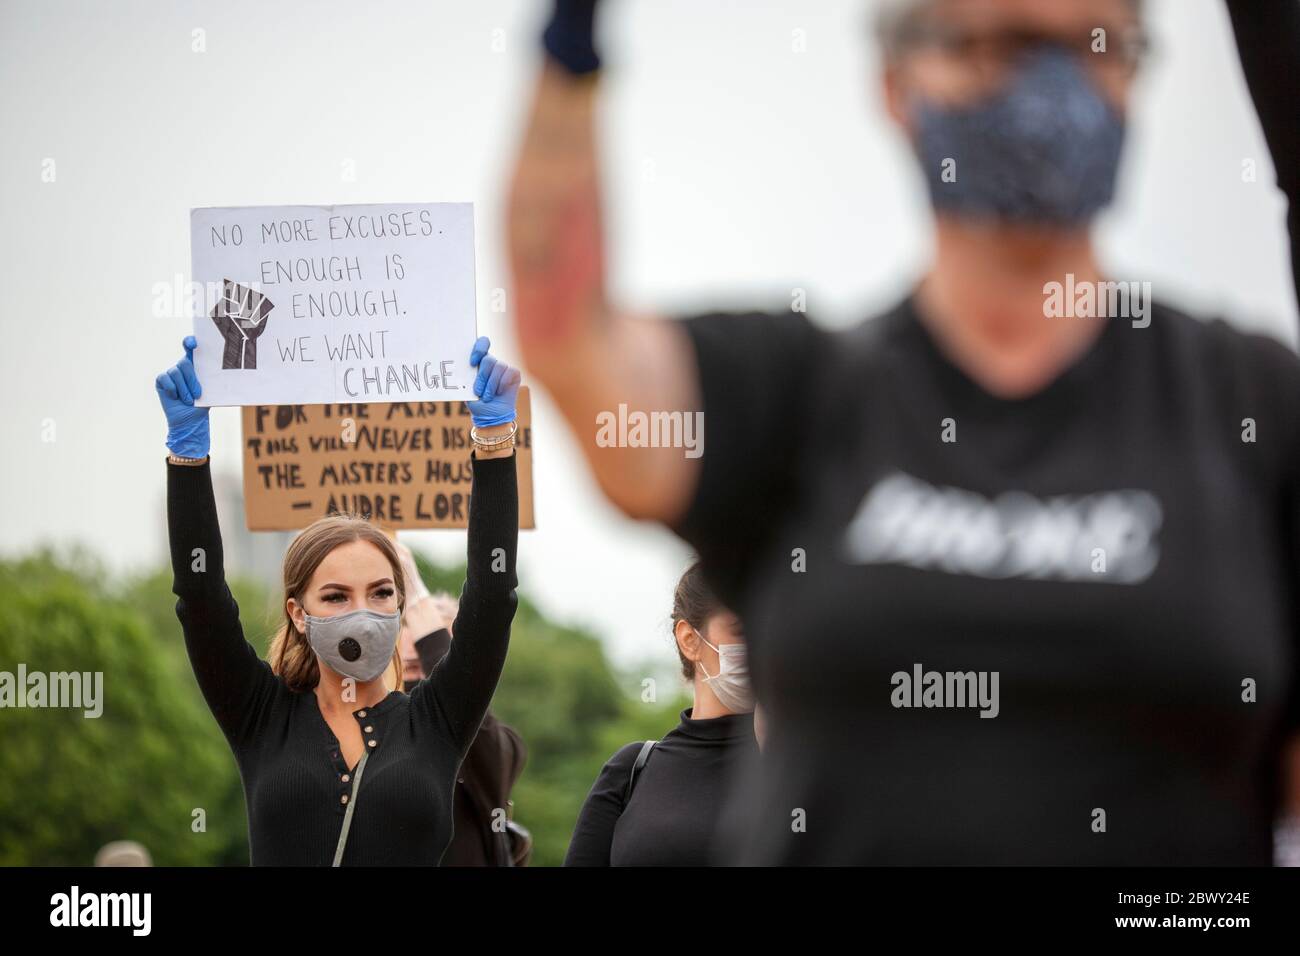 Jeune femme, portant des gants et un masque, tenant un panneau fait maison pendant la Marche de protestation britannique Black Lives Matter. Londres, Angleterre, Royaume-Uni Banque D'Images